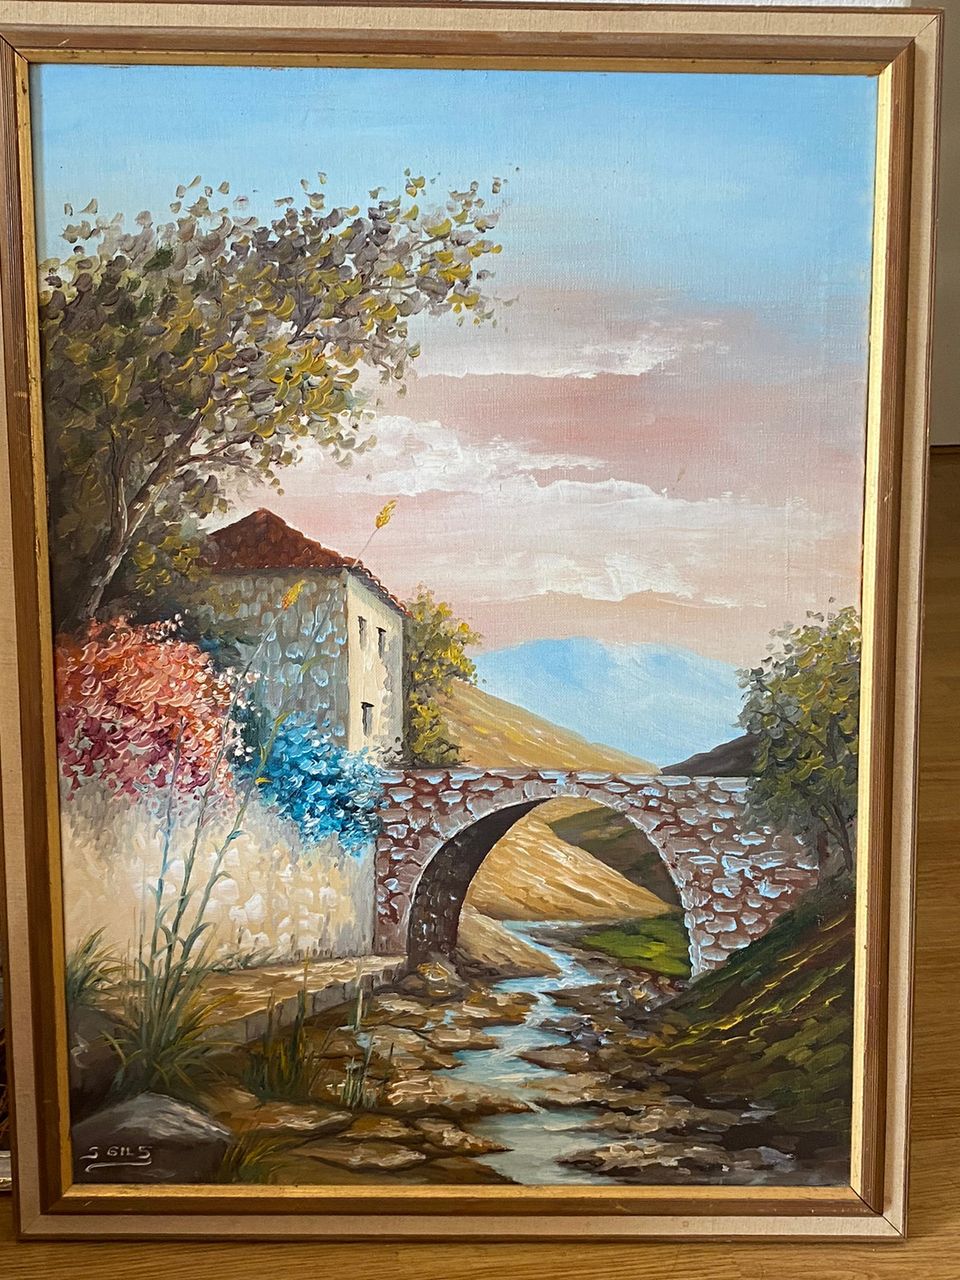 öljymaalauksia talosta ja sillasta / oil painting of a house and a bridge